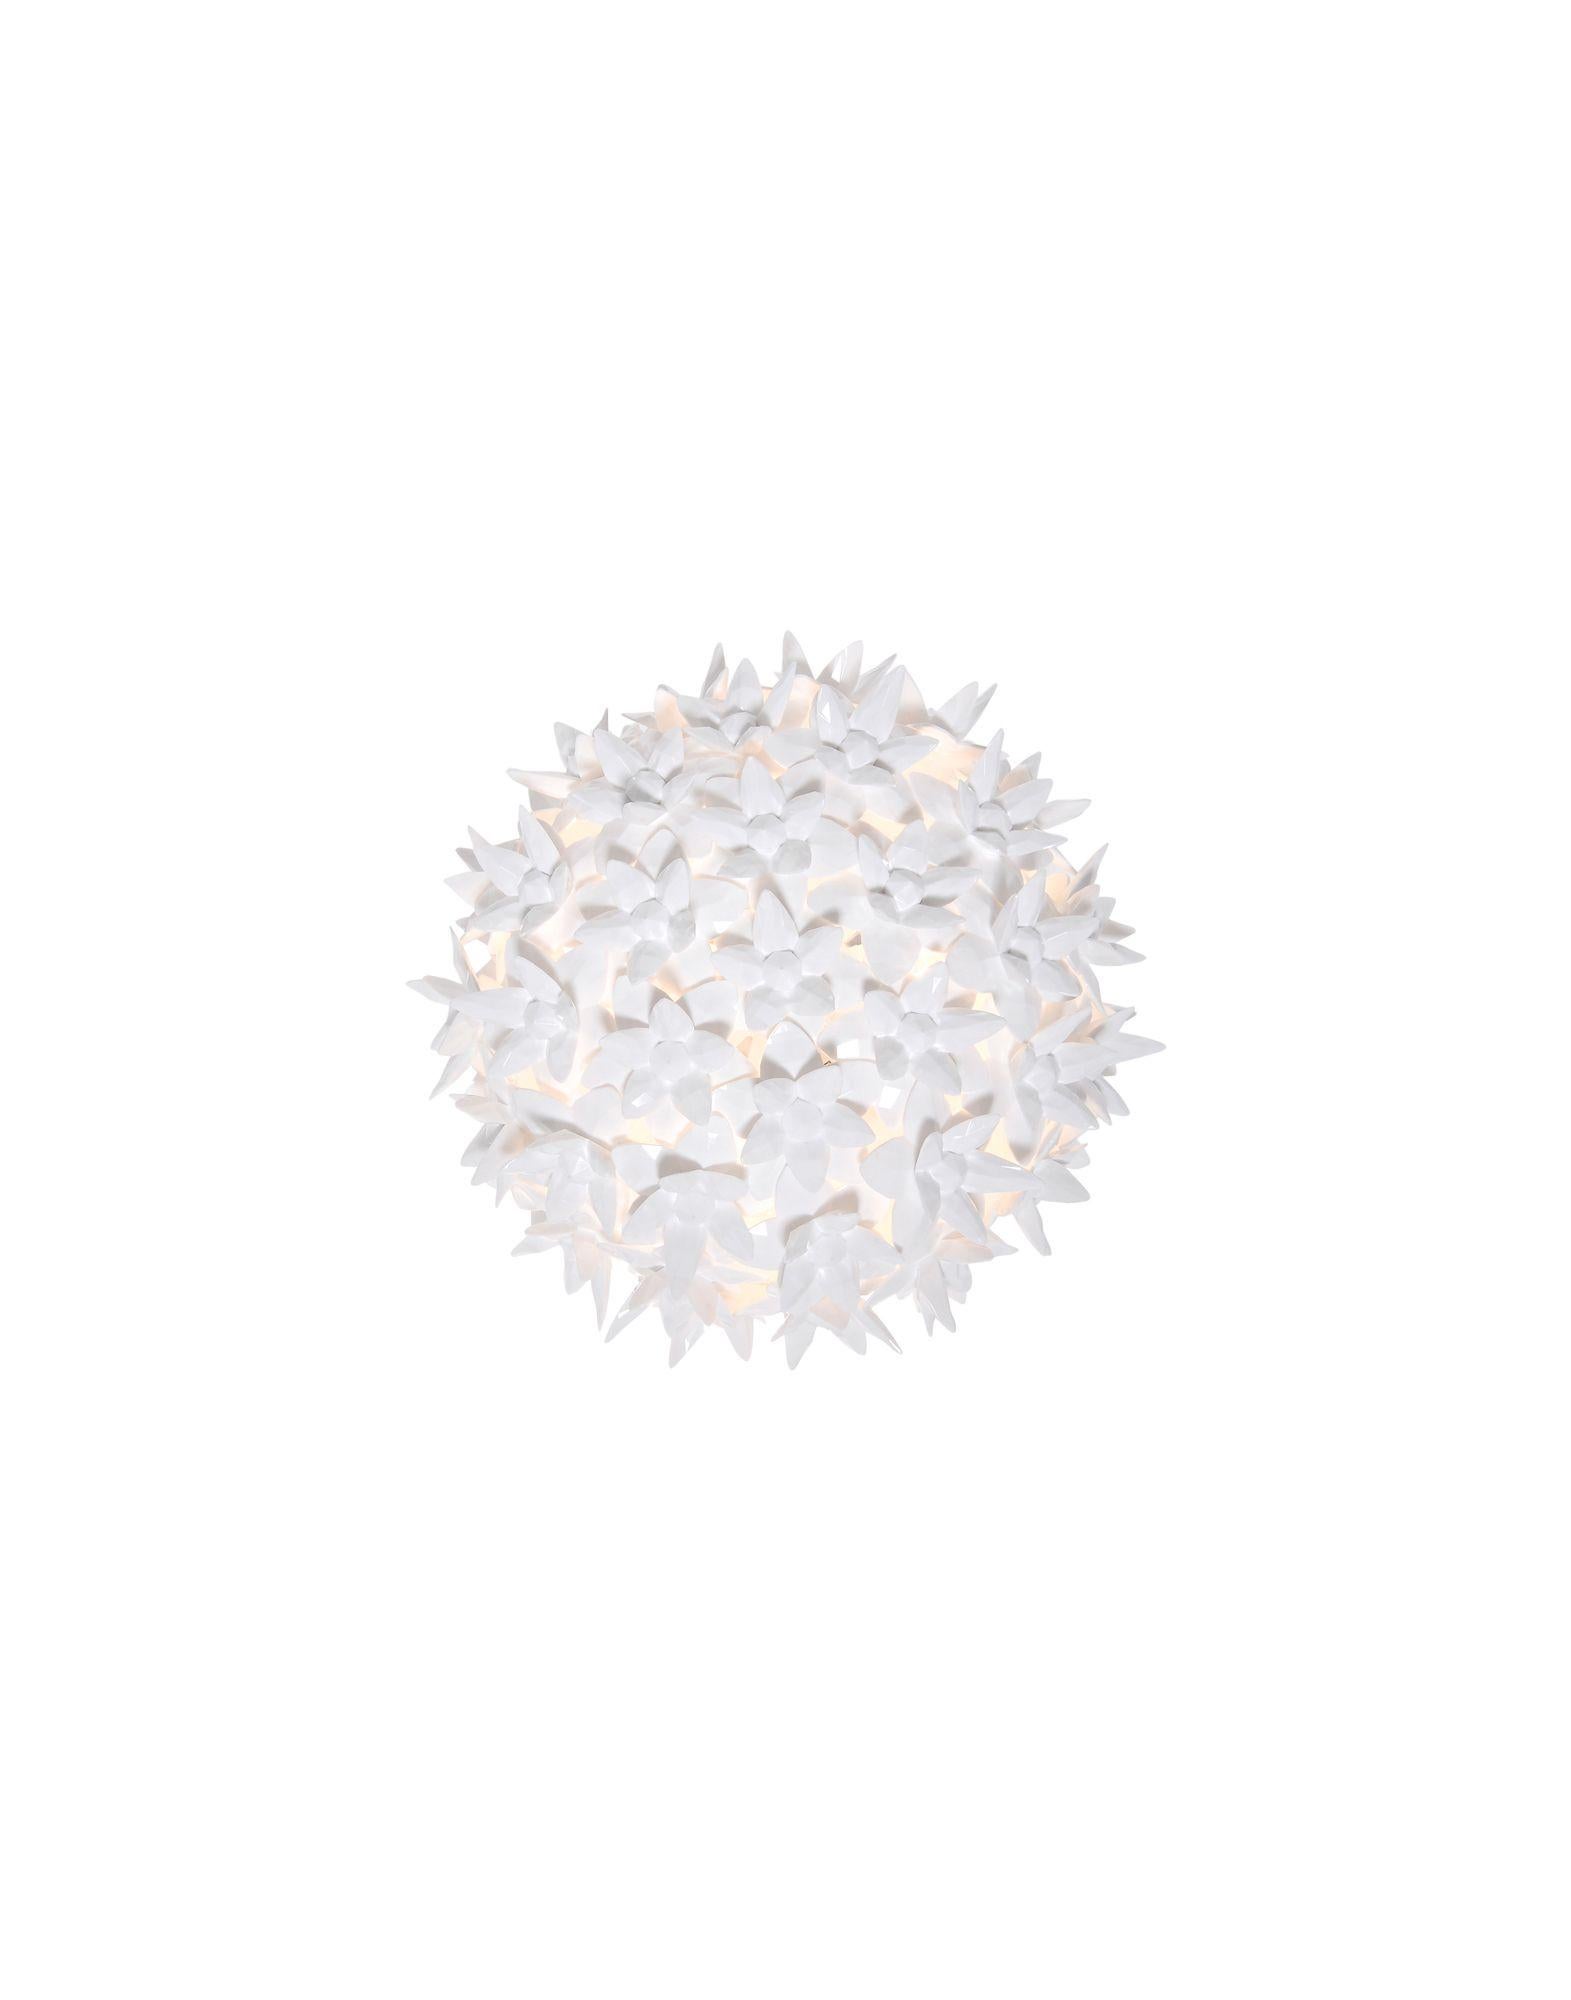 Bloom ist ein röhrenförmiges Polycarbonatgerüst, das vollständig von einer Struktur aus winzigen, transparenten Doppelkronenblüten aus Polycarbonat bedeckt ist. Das Ergebnis ist eine industriell gefertigte Leuchte mit den Formen und der